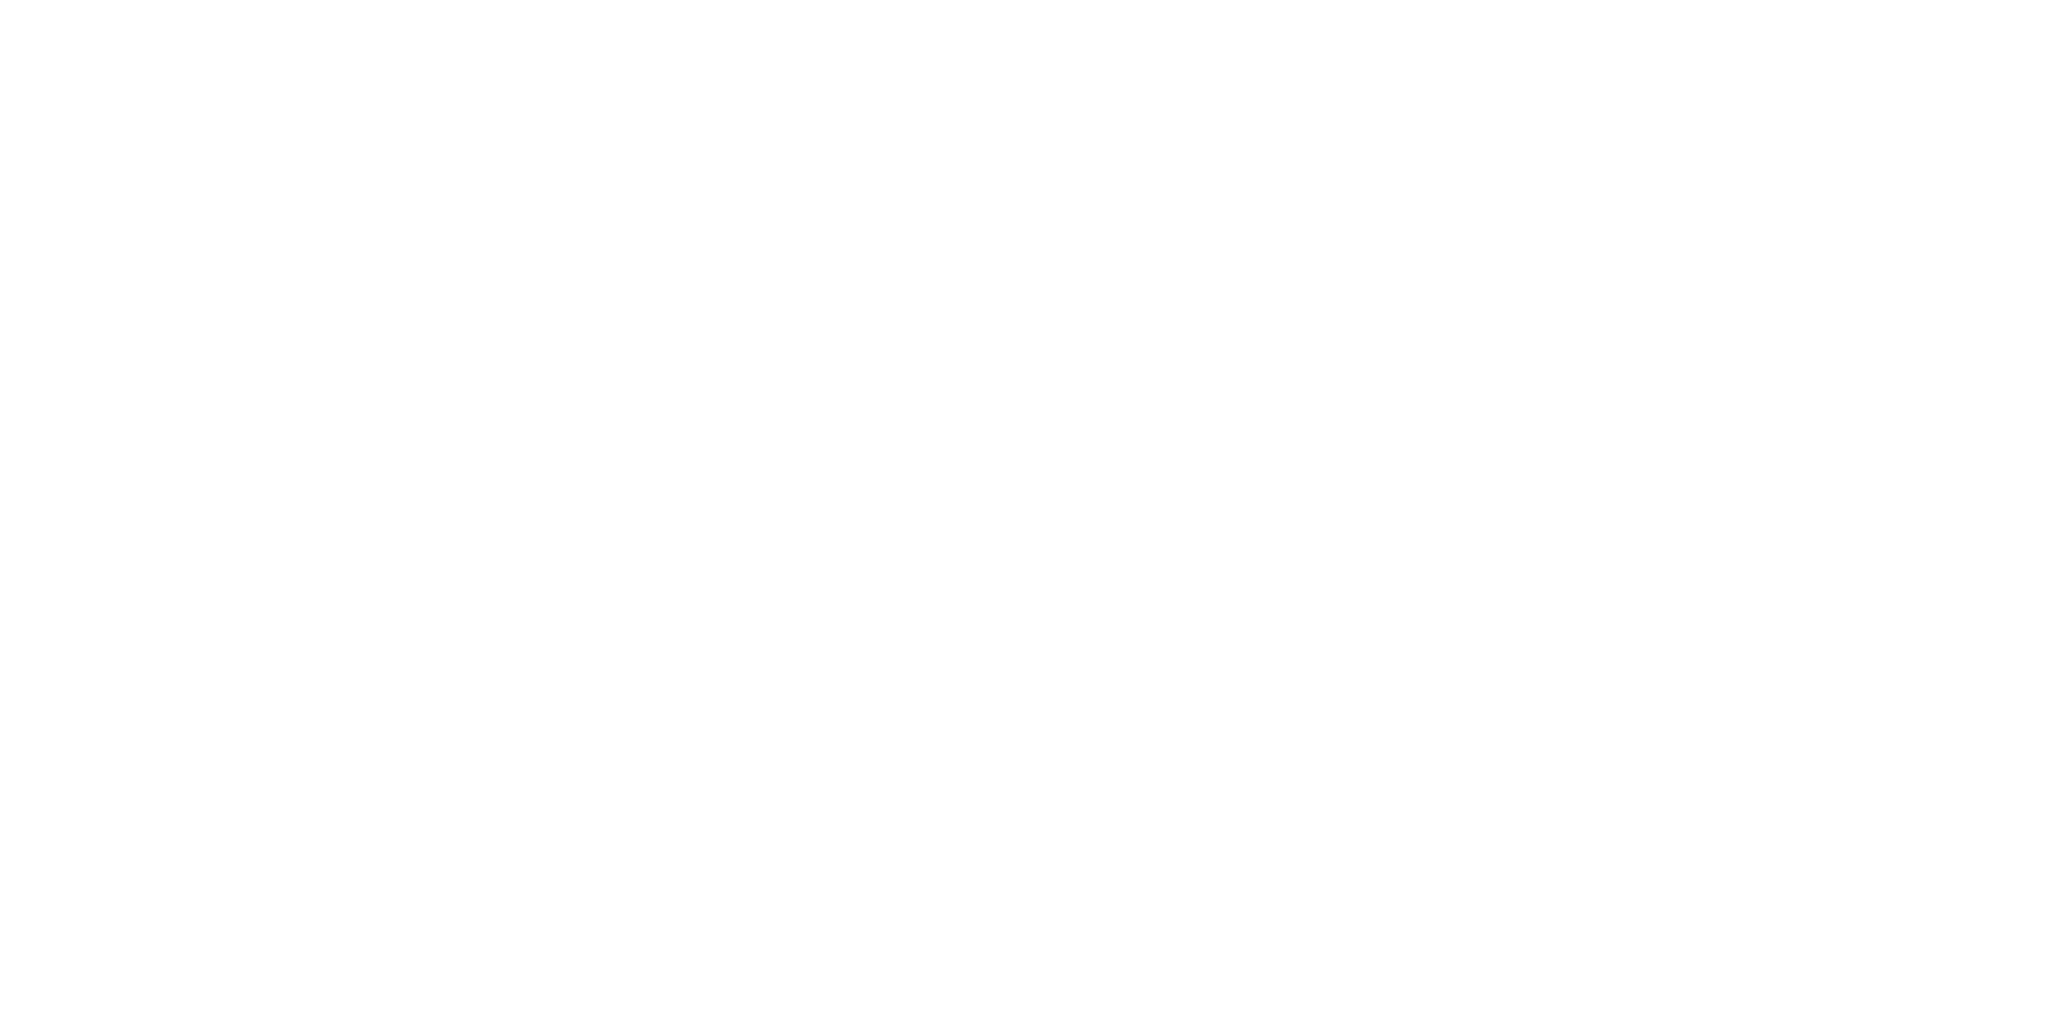 Logo Rio